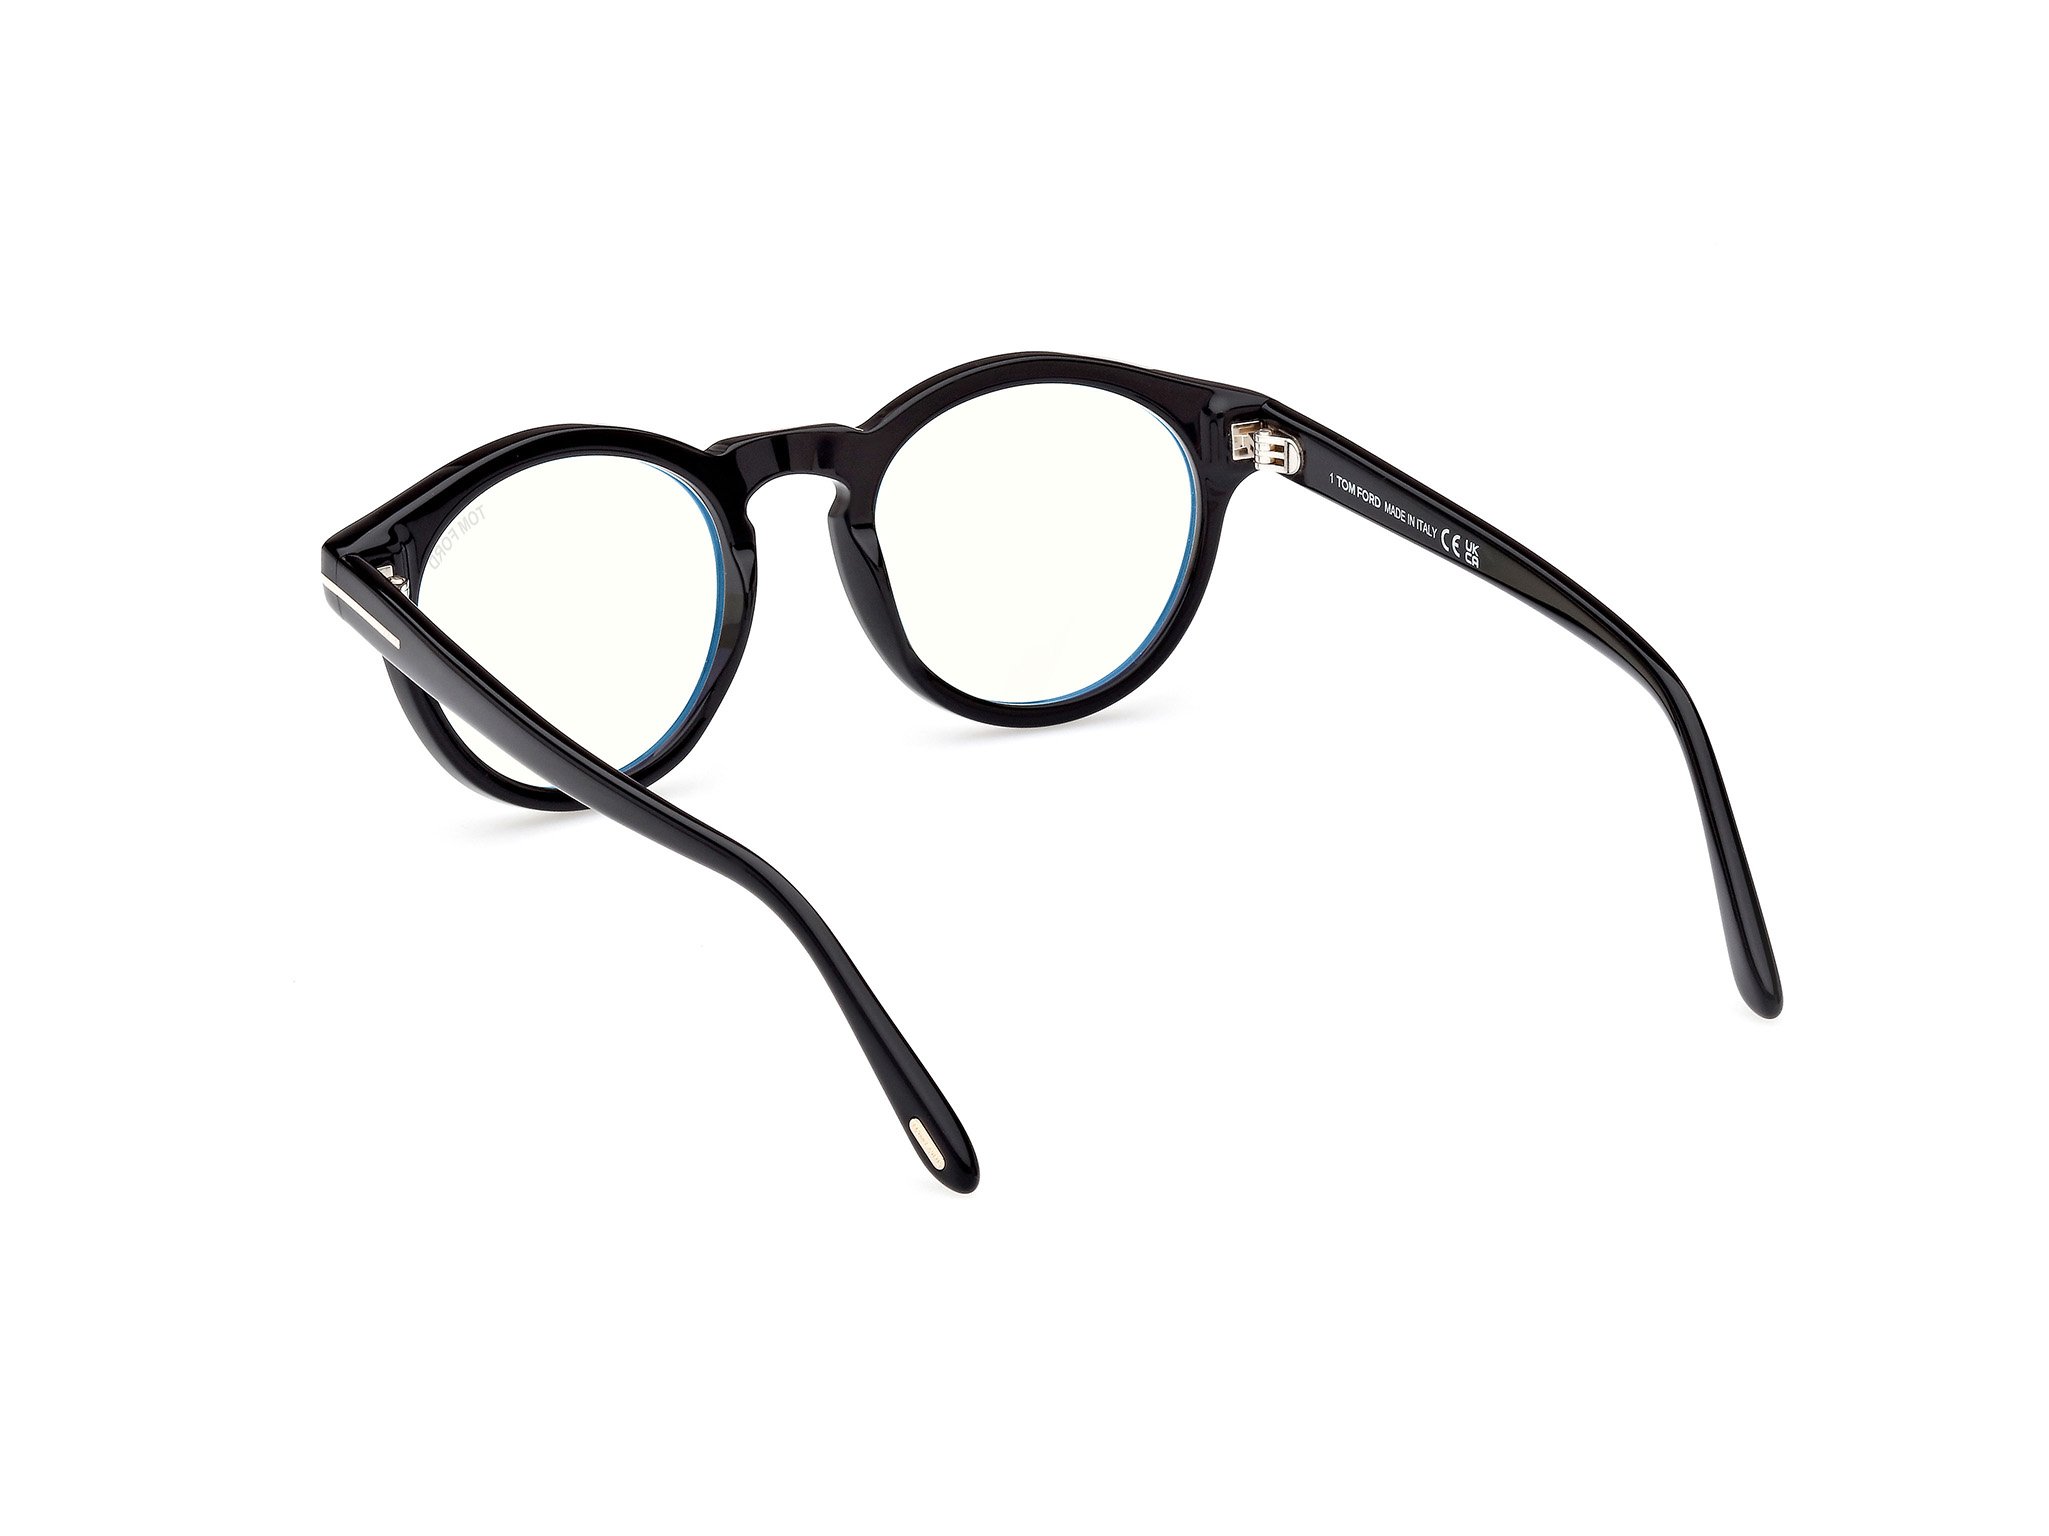 Das Bild zeigt die Korrektionsbrille FT5887-B 001 von der Marke Tom Ford in schwarz.